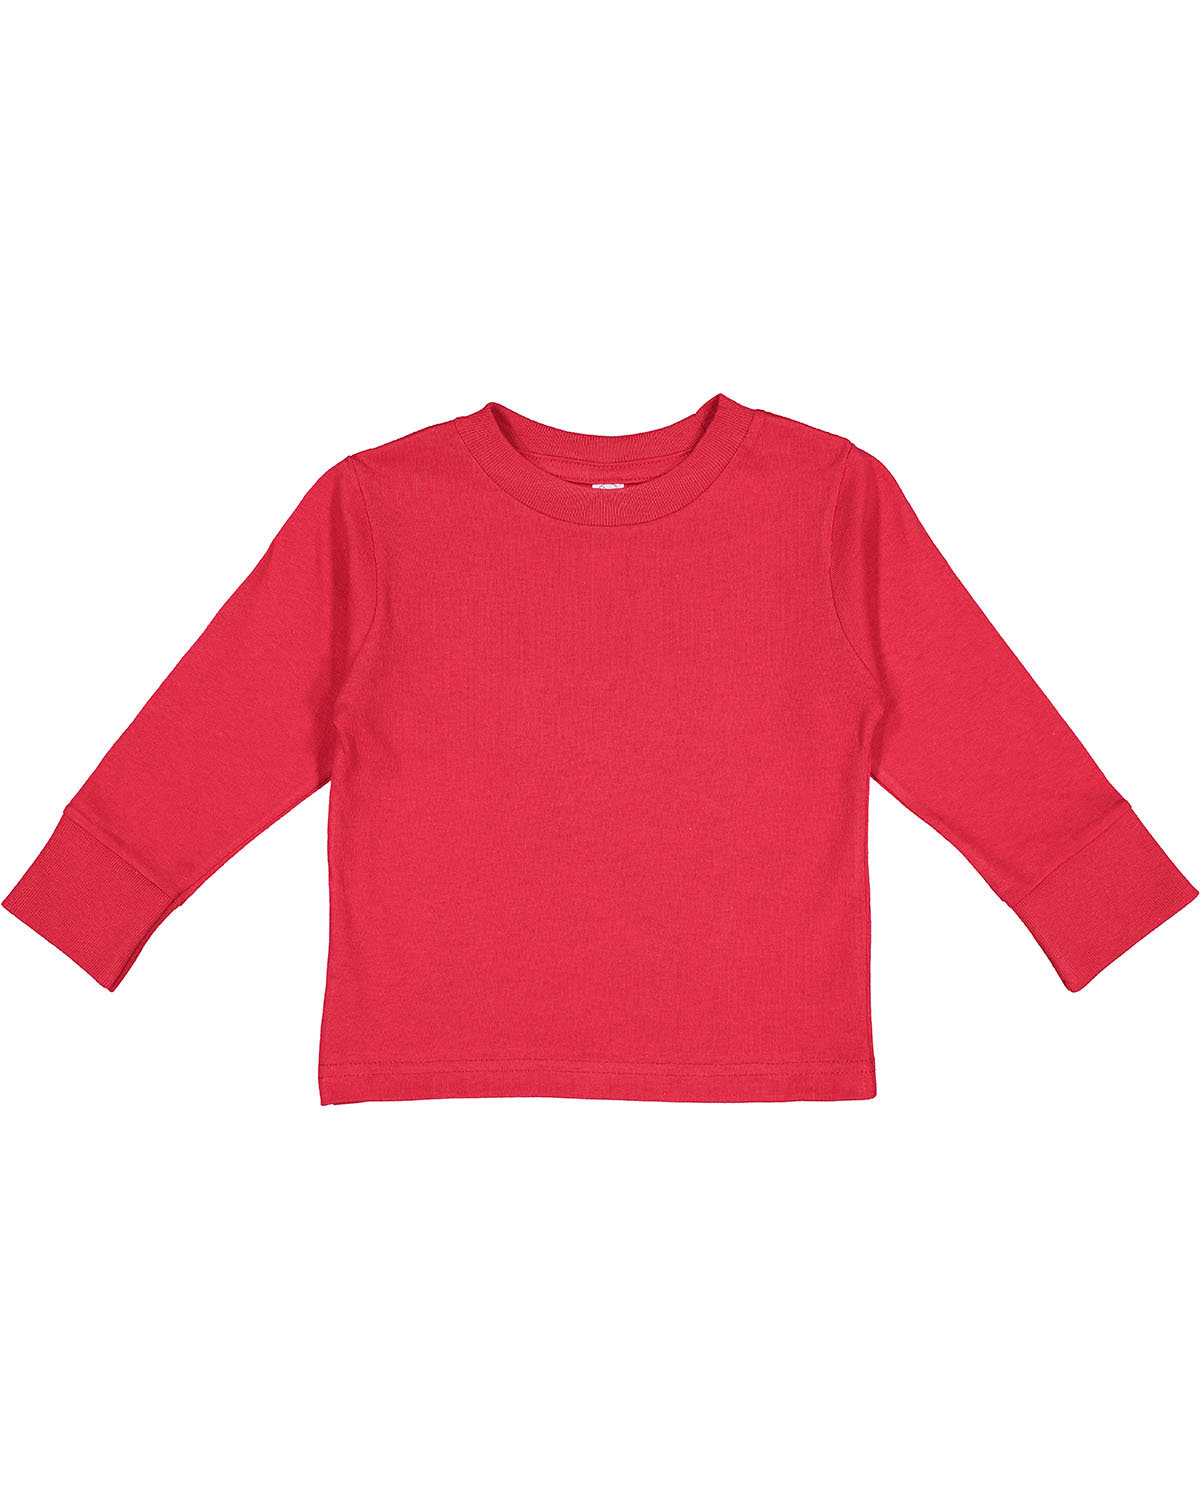 Rabbit Skins Toddler Long-Sleeve T-Shirt RED 